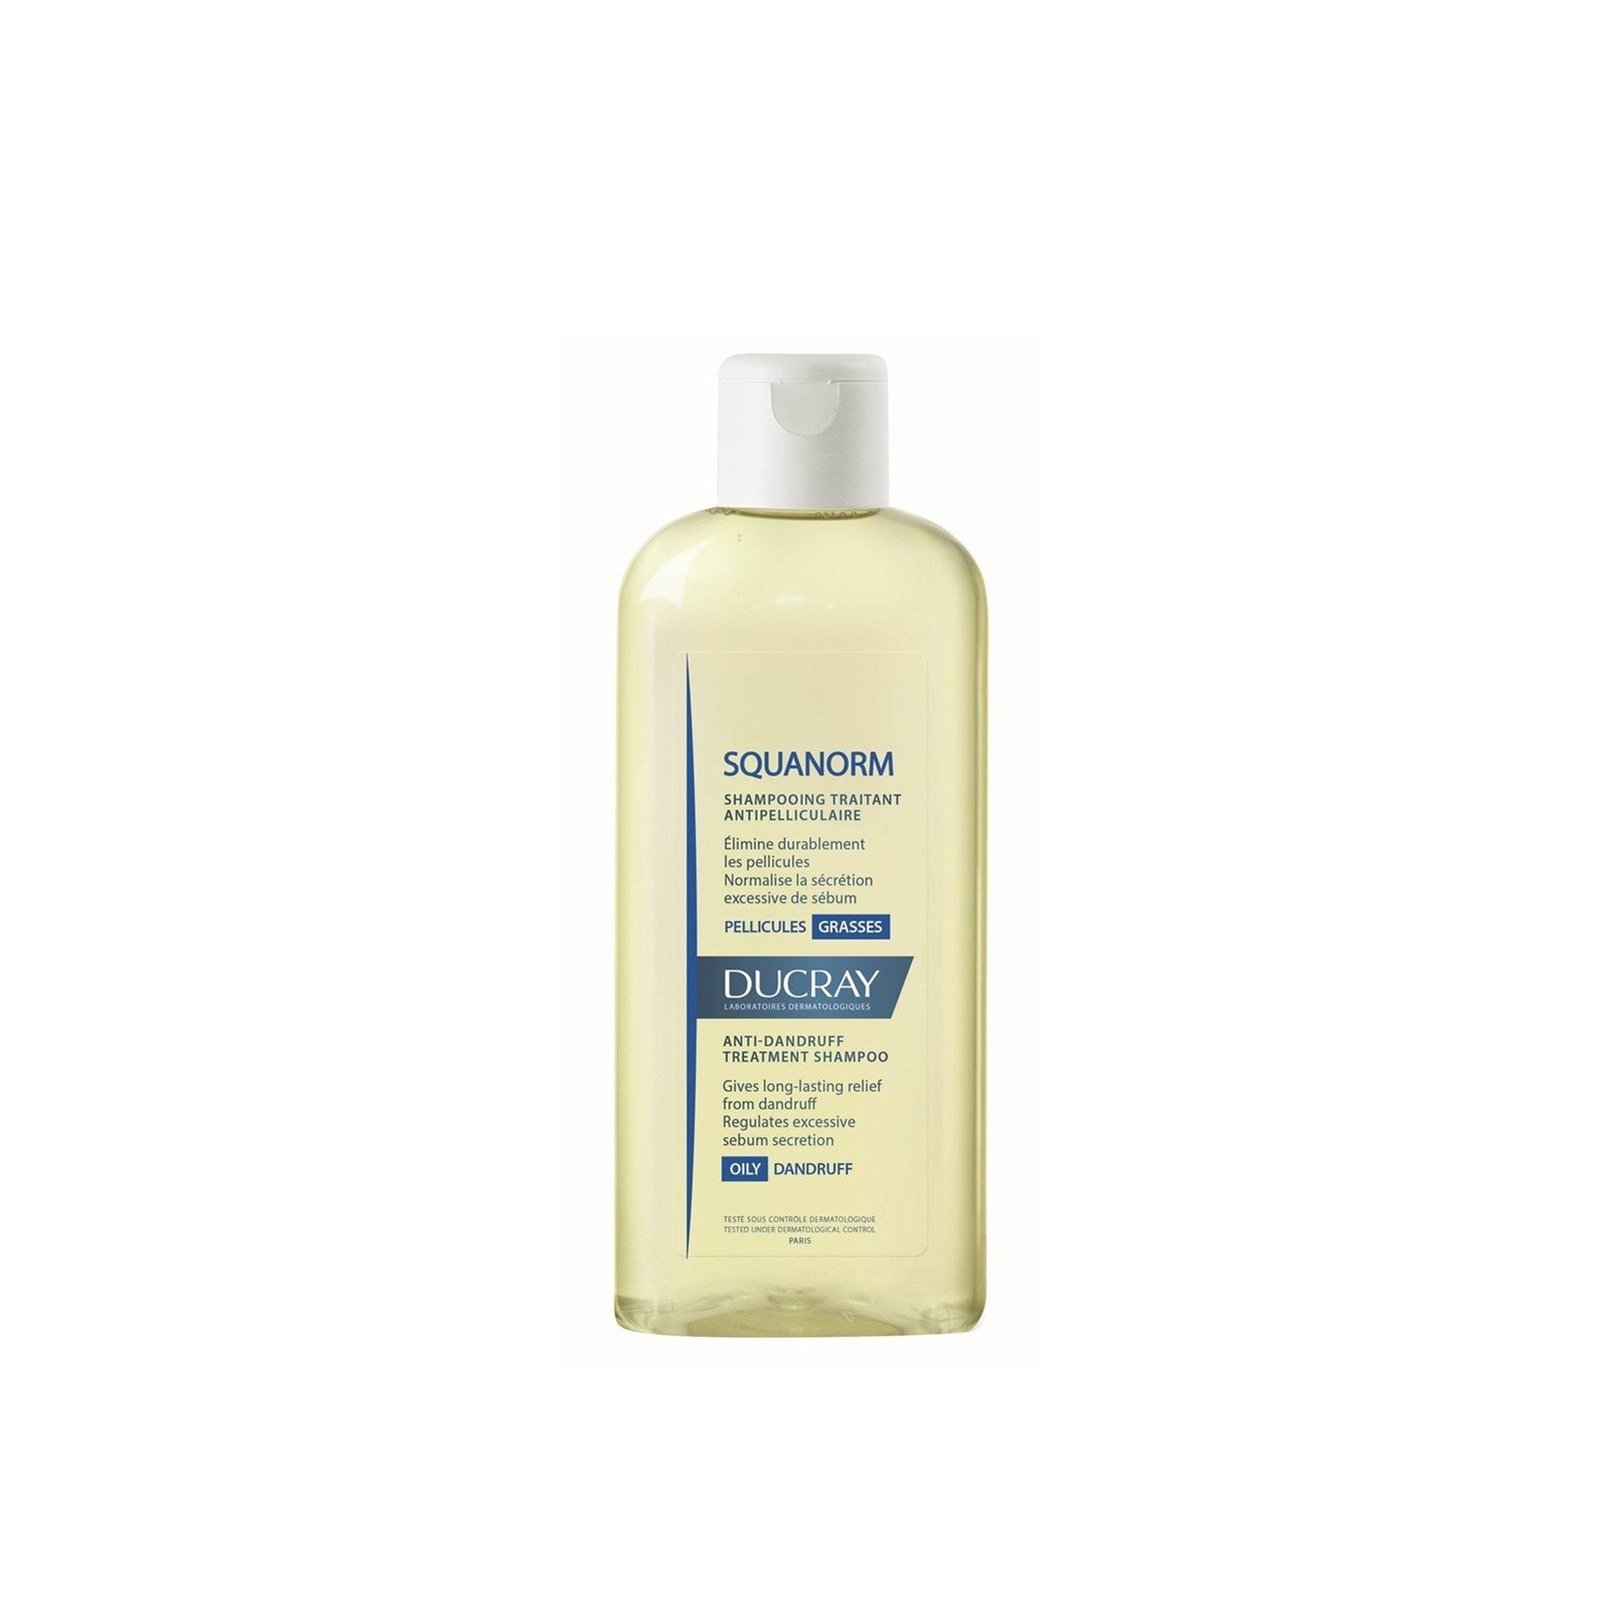 Ducray Squanorm Anti-Dandruff Treatment Shampoo Oily Dandruff 200ml (6.76fl oz)